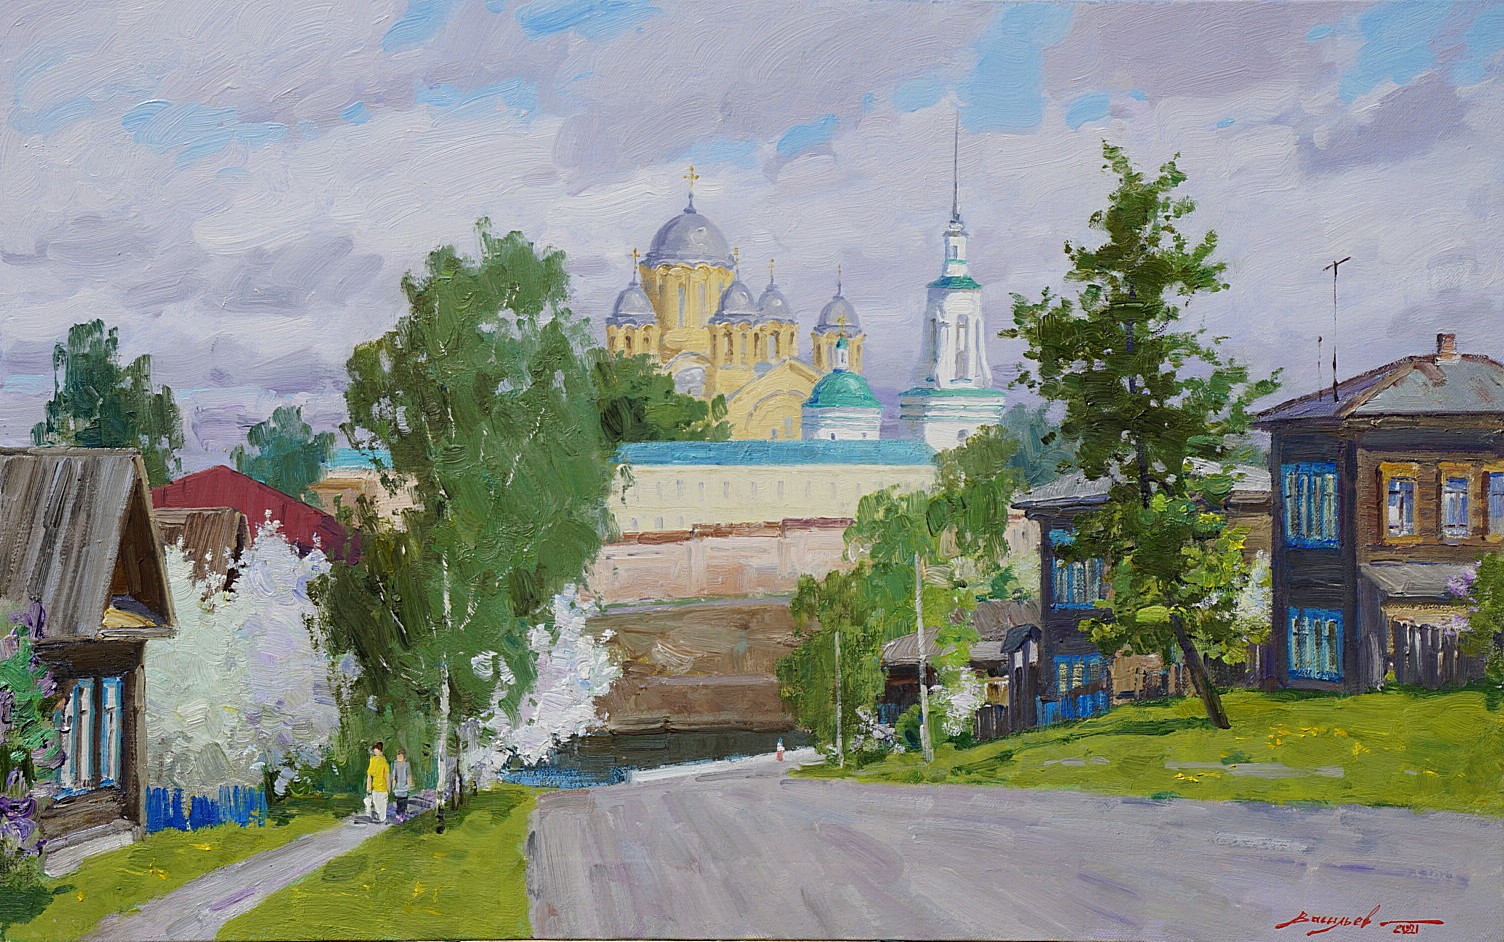 Spring in Verkhoturye - 1, Dmitry Vasiliev, Buy the painting Oil